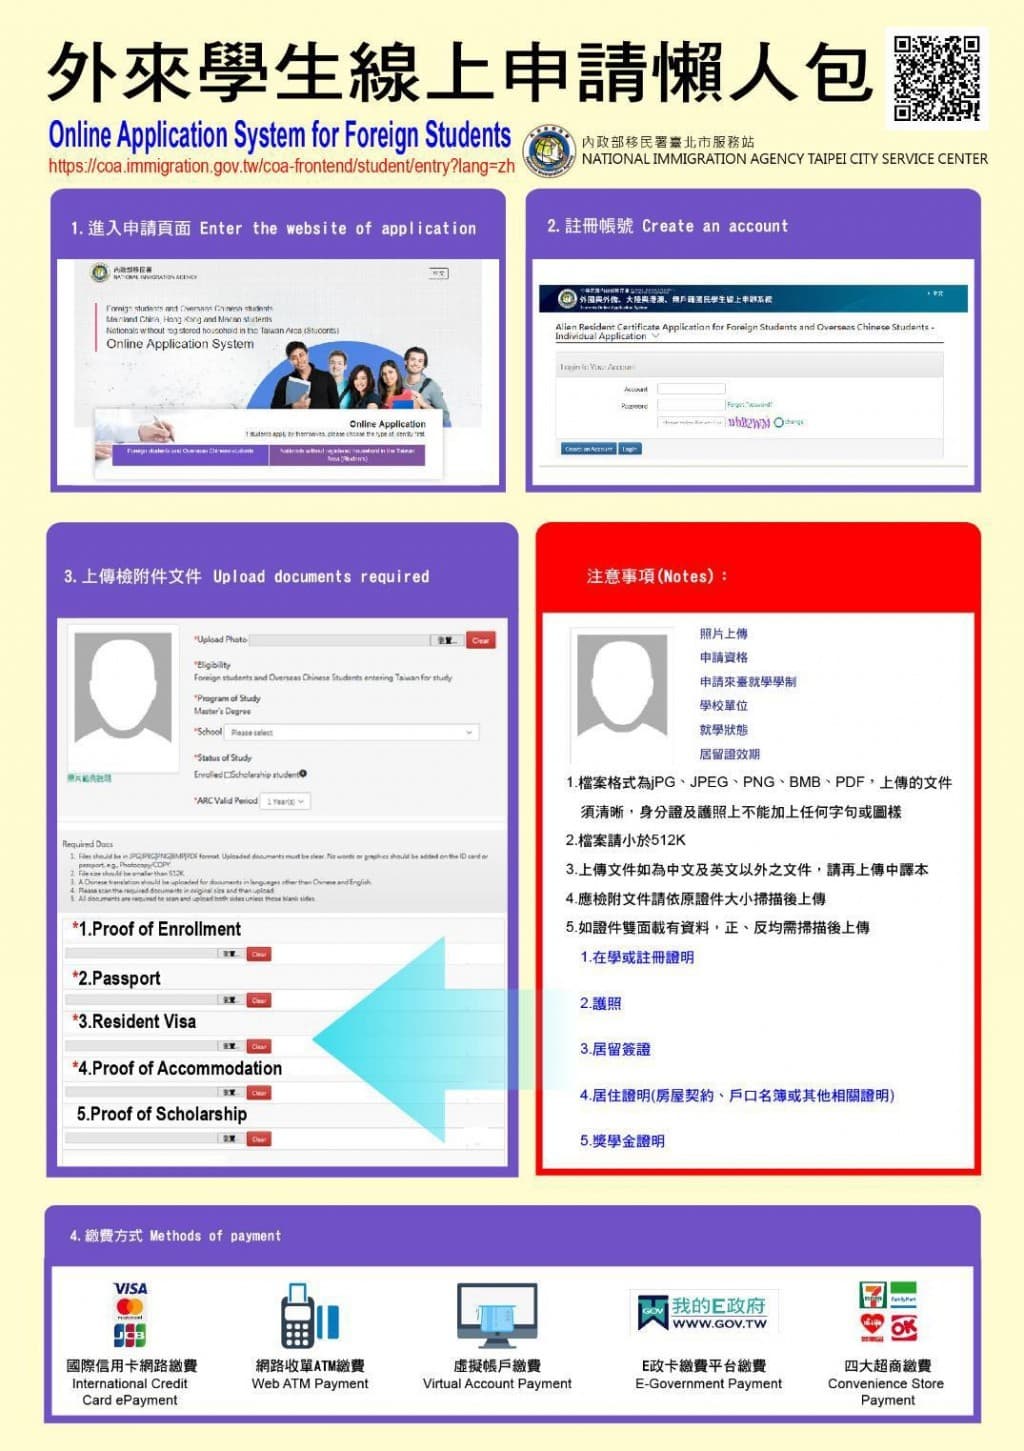 Thẻ cư trú Đài Loan, Alien Resident Card (A.R.C), là giấy tờ chứng minh việc lưu trú hợp pháp tại Đài Loan. Theo quy định, người nước ngoài nhập cảnh vào Đài Loan phải nộp đơn xin thẻ cư trú trong vòng 15 ngày sau khi đến nơi.
Thẻ cư trú Đài Loan do Sở Di dân (National Immigration Agency/NIA) cấp.